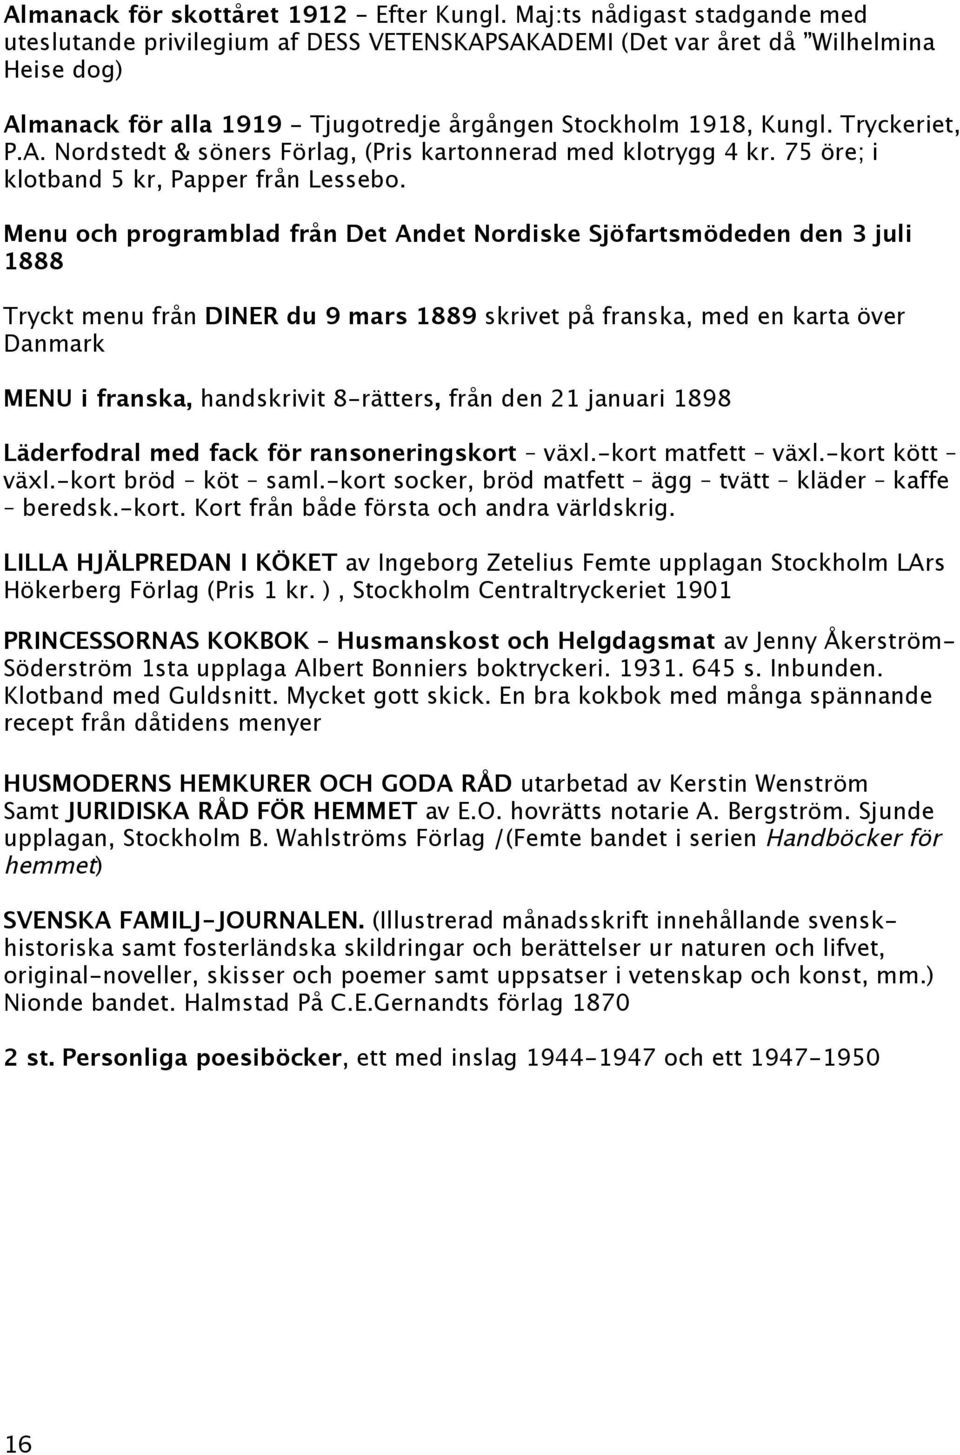 Tryckeriet, P.A. Nordstedt & söners Förlag, (Pris kartonnerad med klotrygg 4 kr. 75 öre; i klotband 5 kr, Papper från Lessebo.